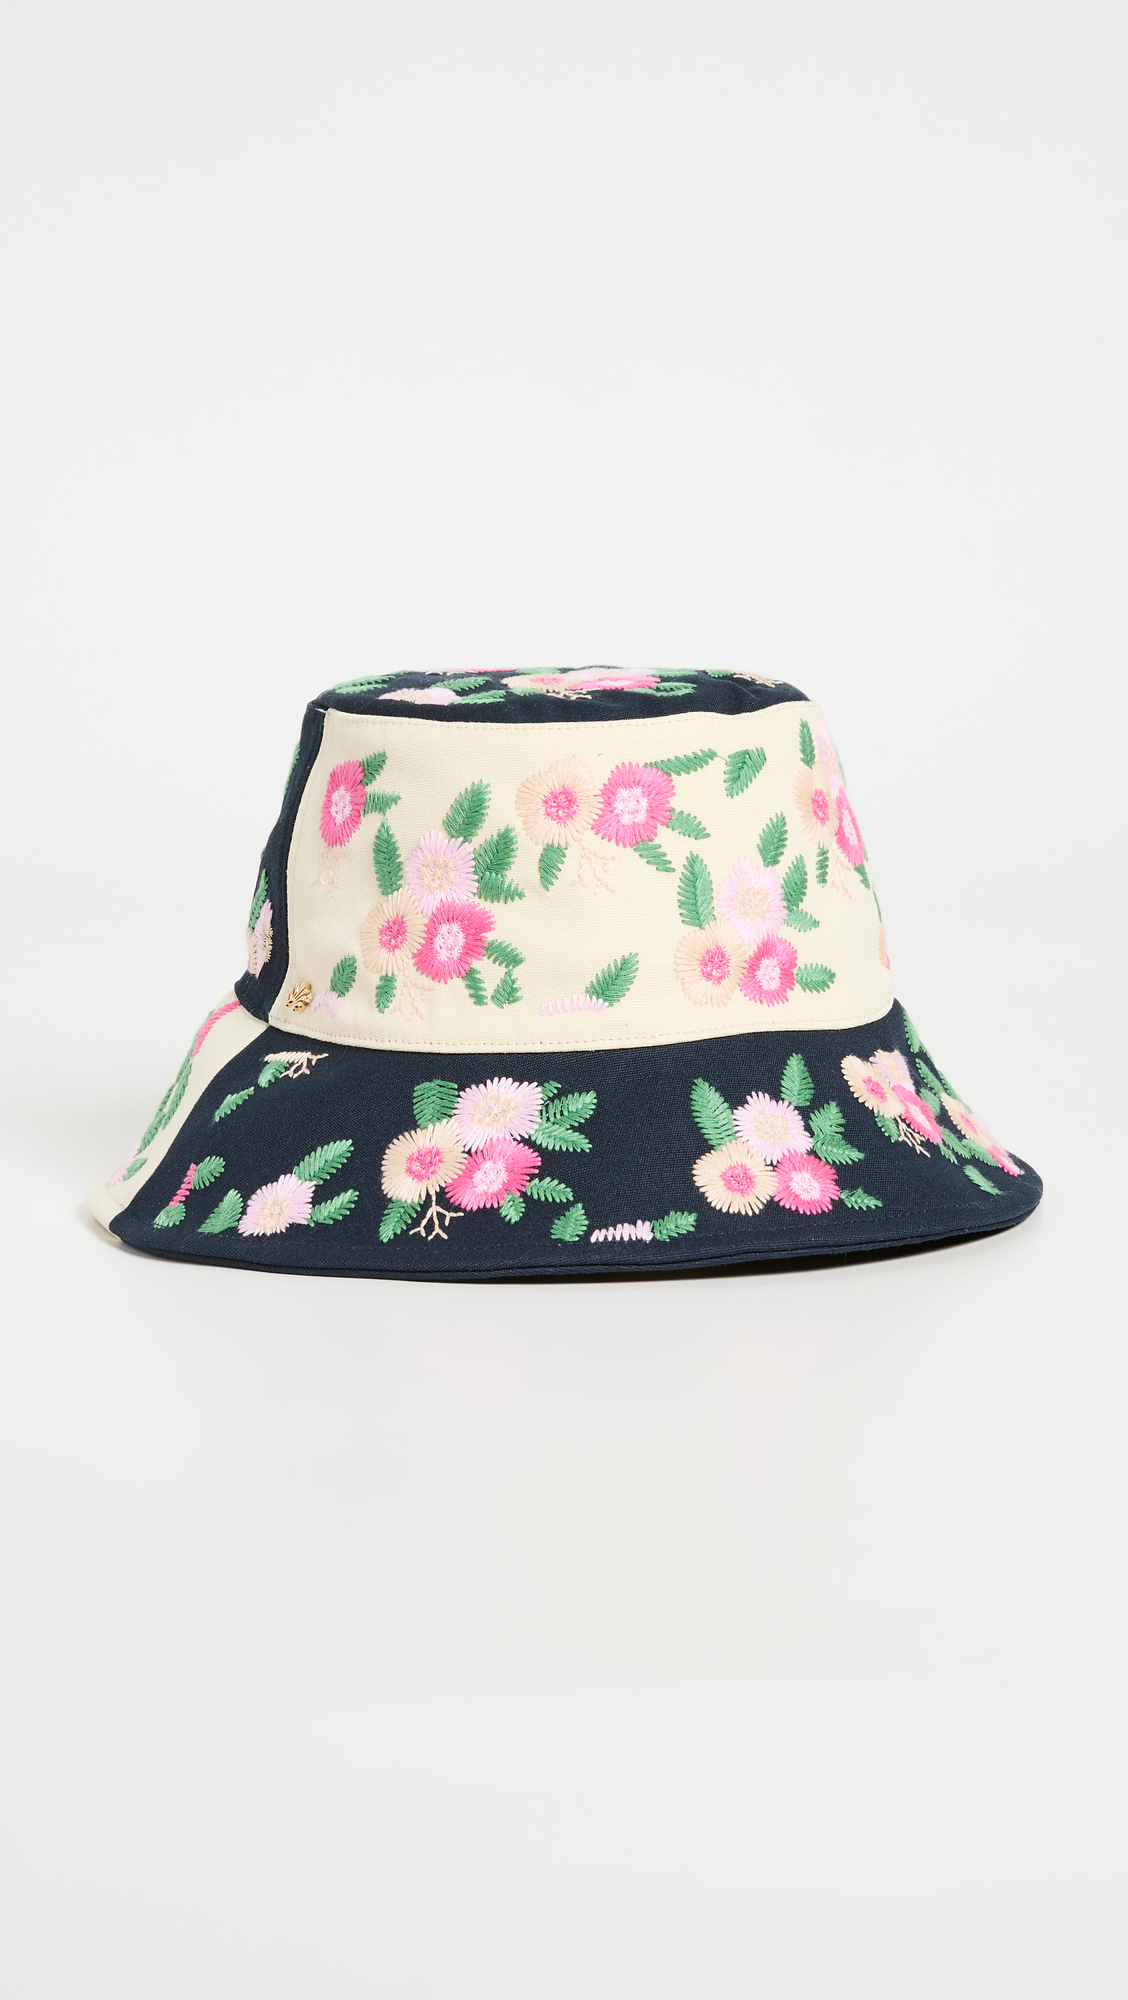 Lele Sadoughi Floral Embroidered Bucket Hat